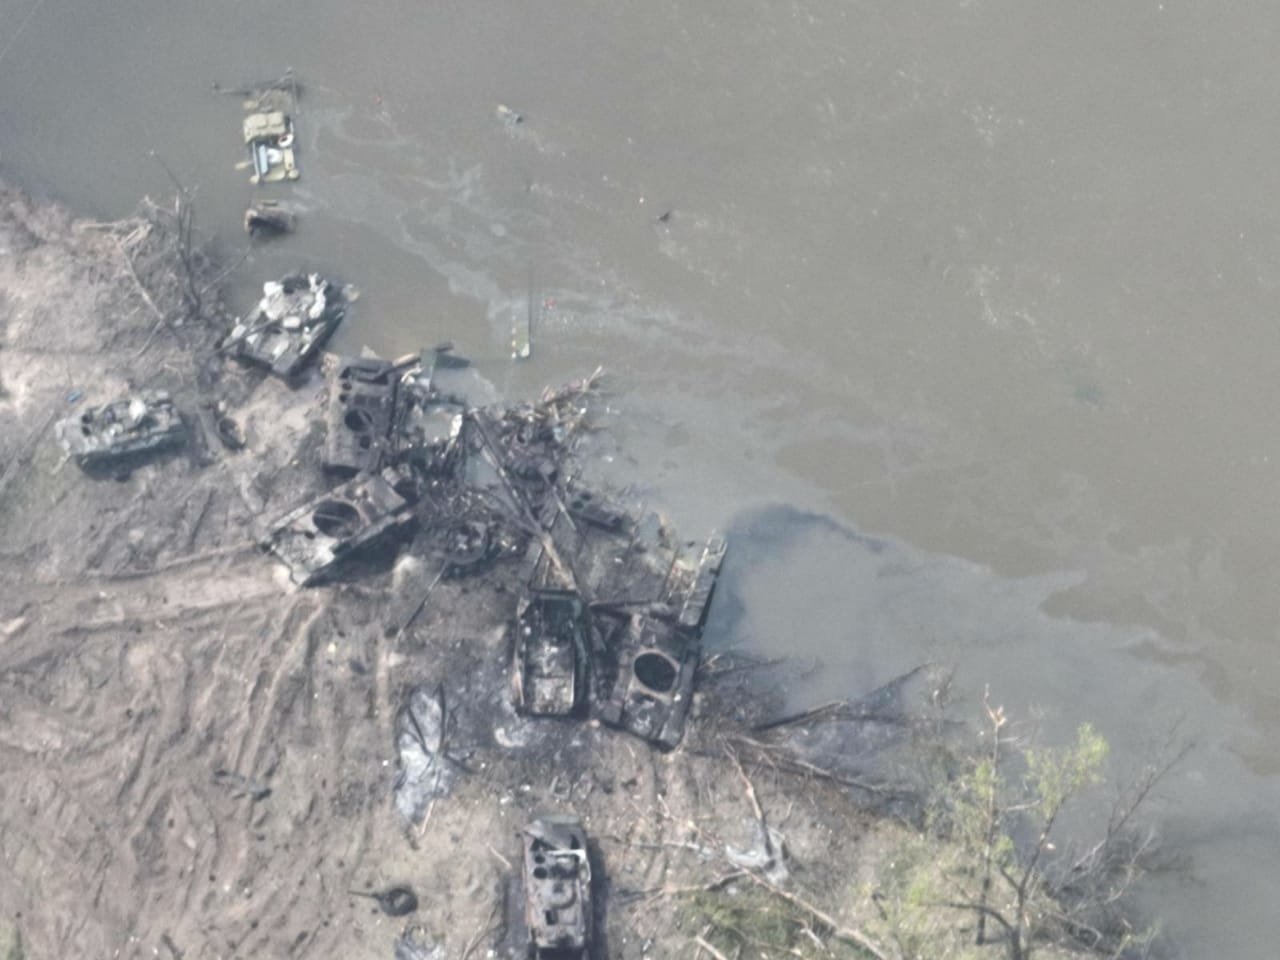  Povestea dezastrului rusesc la traversarea râului Siverskîi, relatată de inginerul militar care coordonat atacul